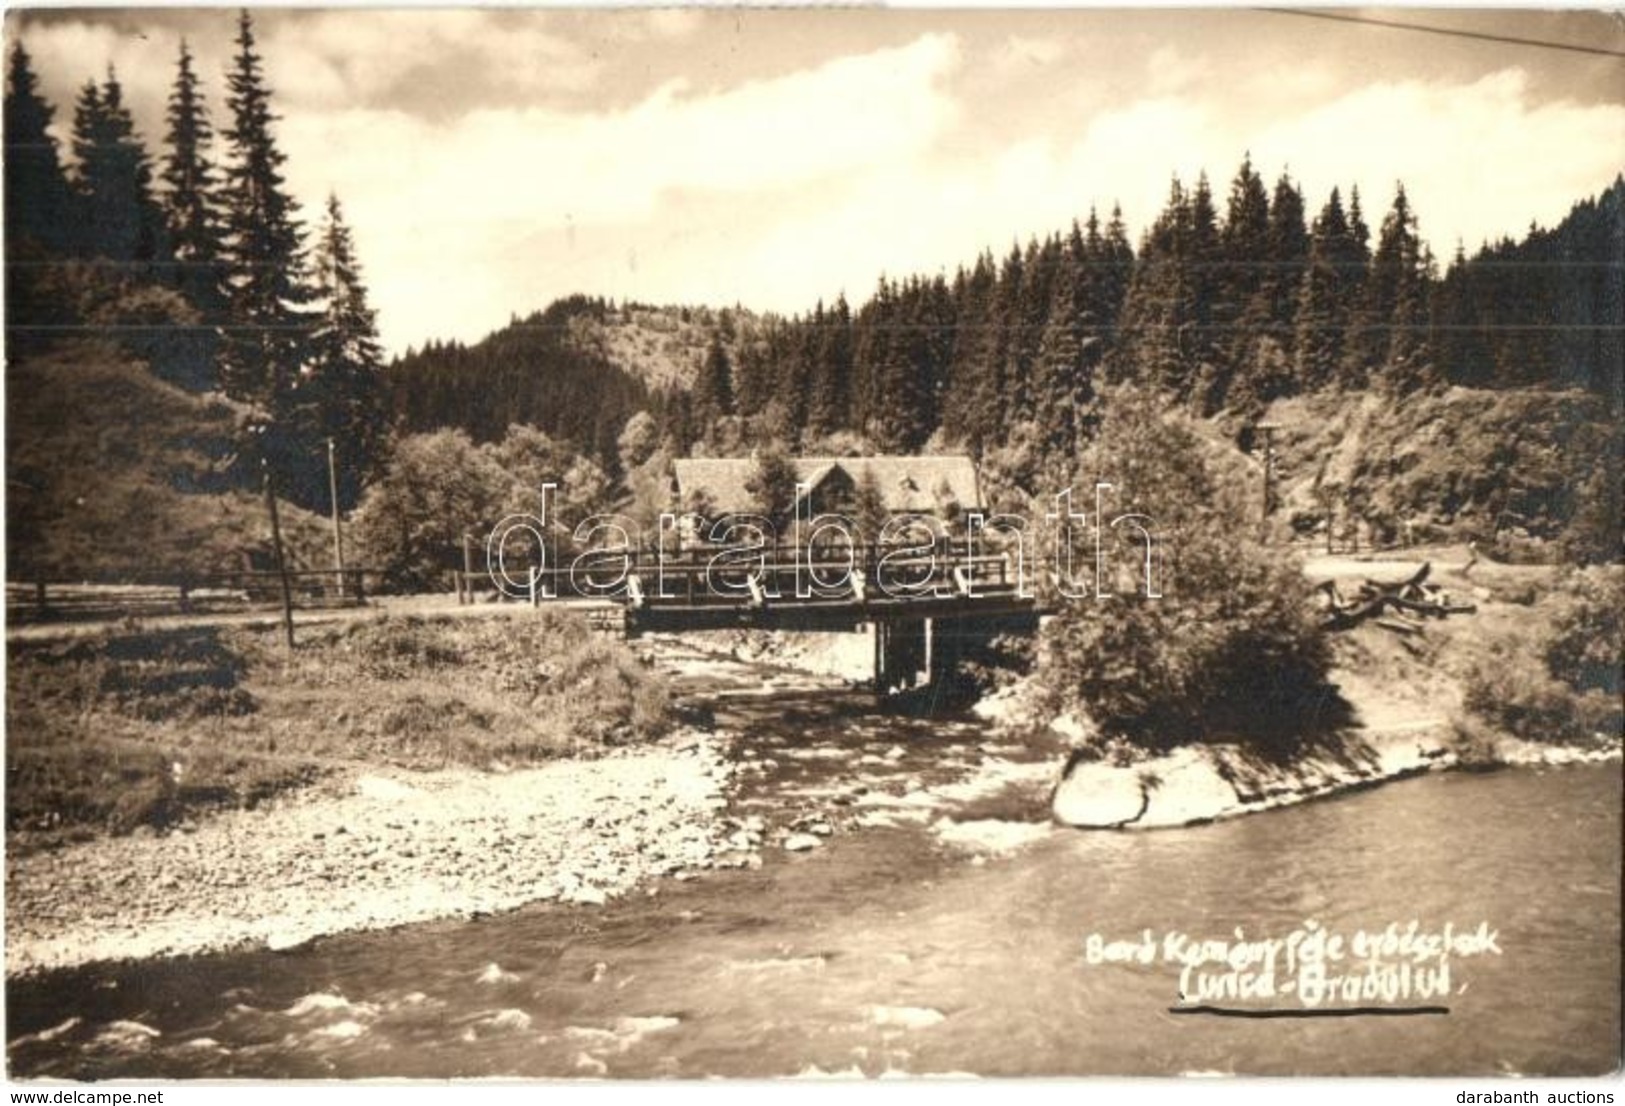 T2 1929 Palotailva, Lunca Bradului; Báró Kemény-féle Erdészlak, Híd / Forester's House, Bridge. Photo - Ohne Zuordnung